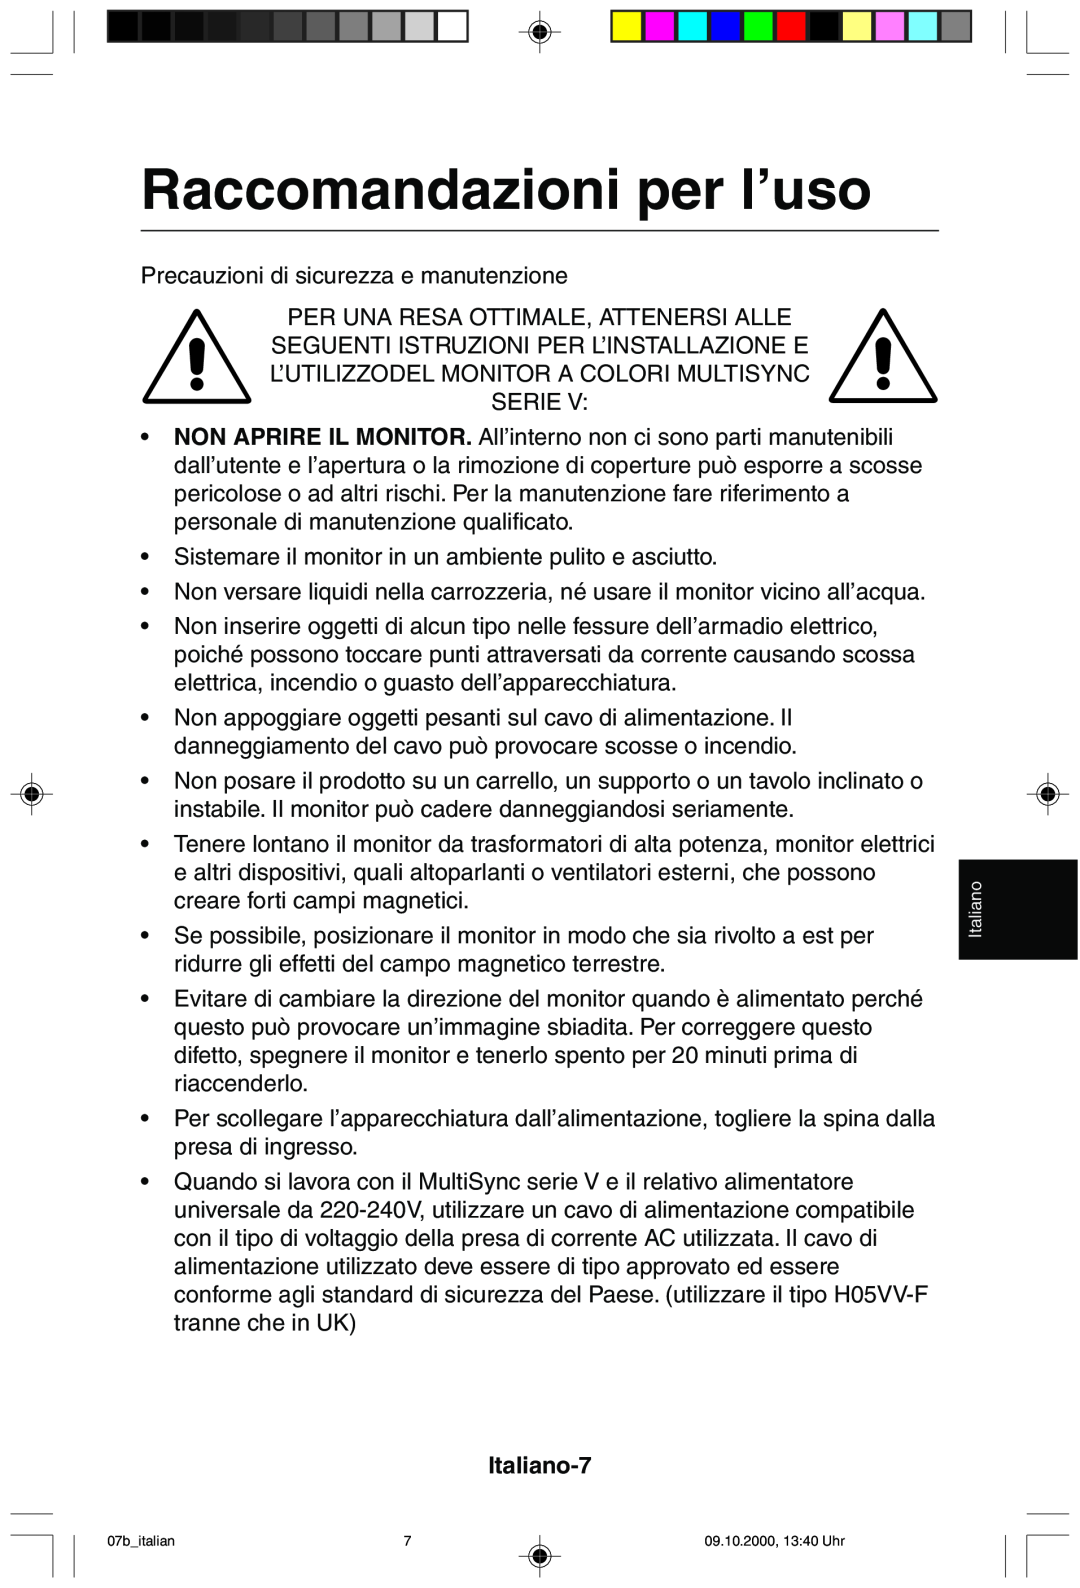 NEC 95F user manual Raccomandazioni per l’uso, Italiano-7 